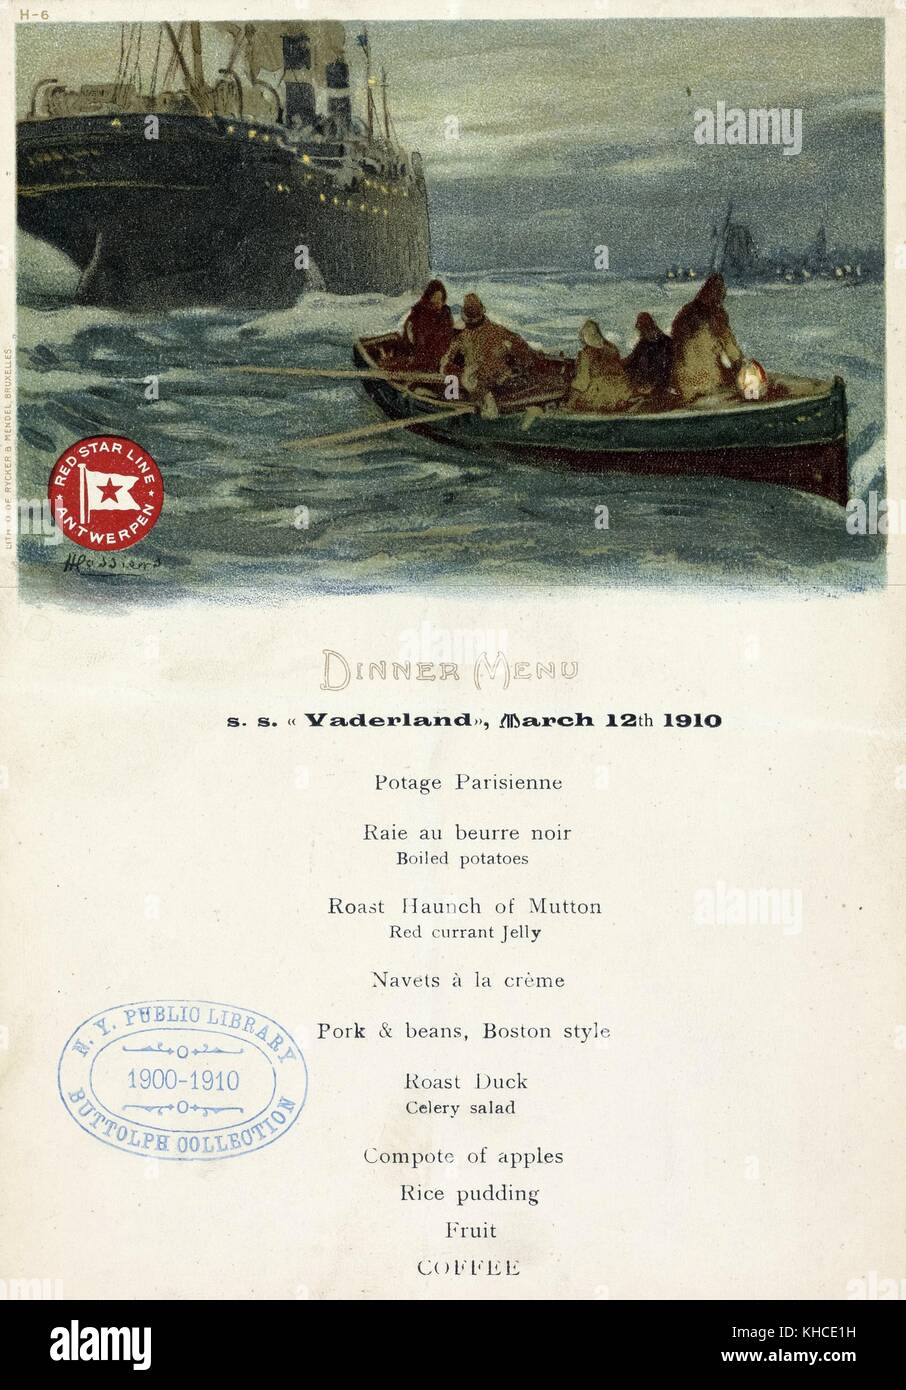 Menü mit einem Abendessen, Red Star Line von Antwerpen statt an Bord s s vaderland, mit Kunstwerken von Menschen auf einem Boot Rudern auf dem Weg zu einem Dampf Liner, 12. März 1910 von der New York Public Library. Stockfoto